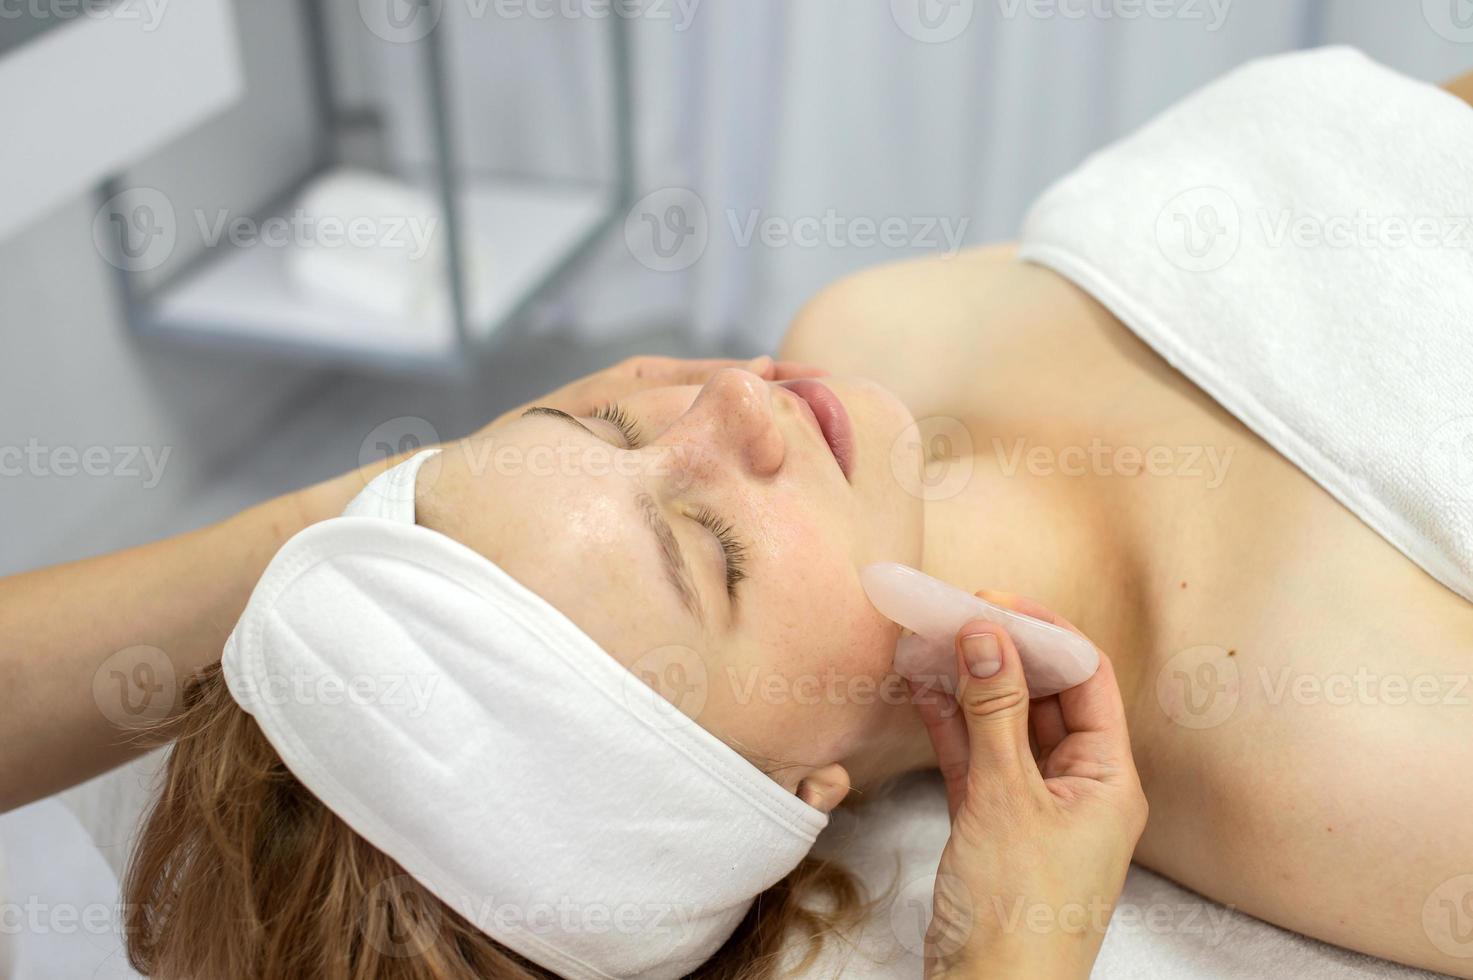 cosmetologista faz uma facial massagem com uma conjunto do guache foto